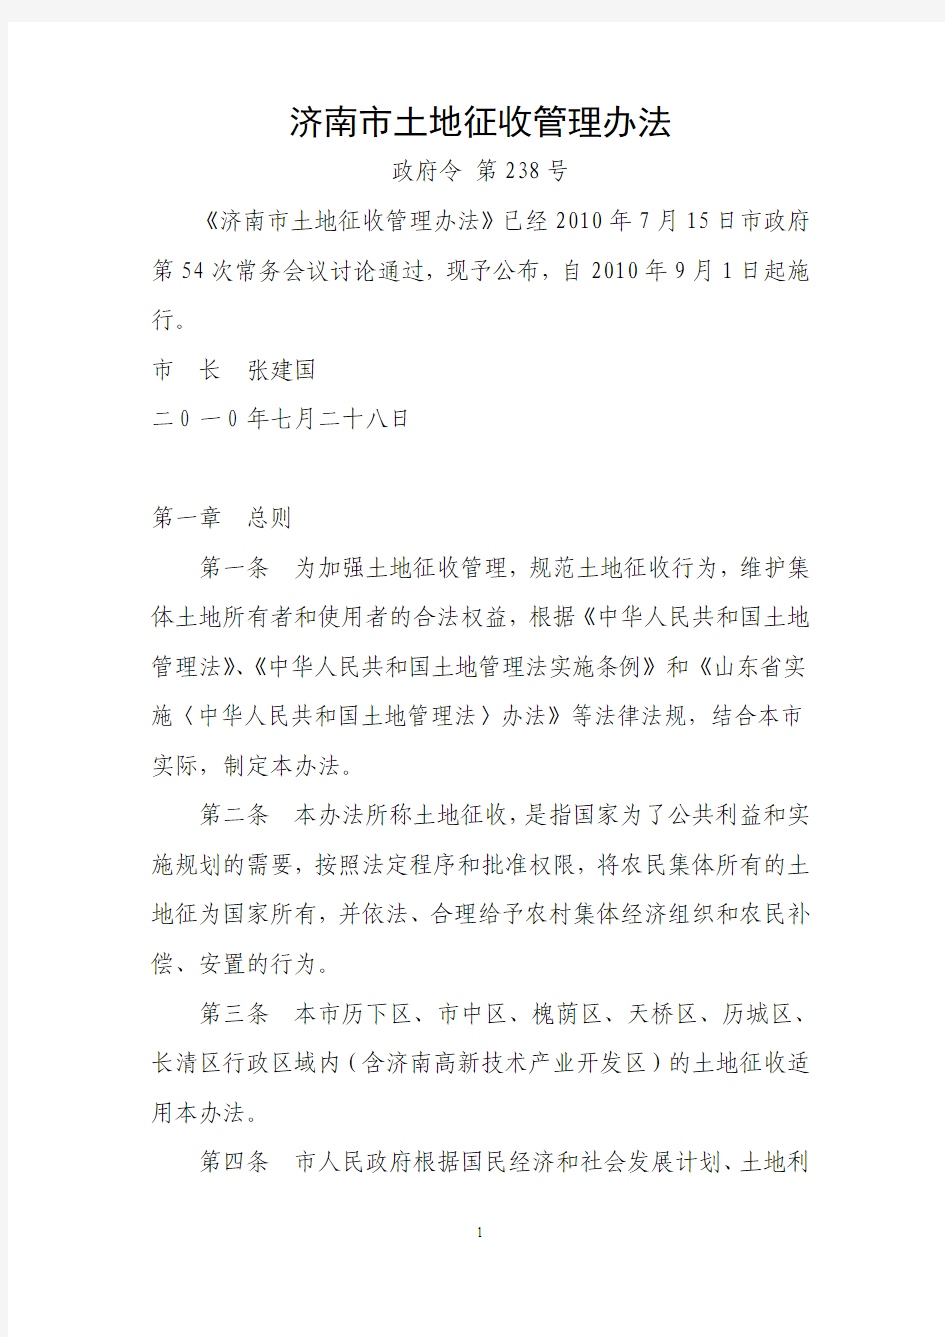 济南市土地征收管理办法(2010年 政府令第238号)